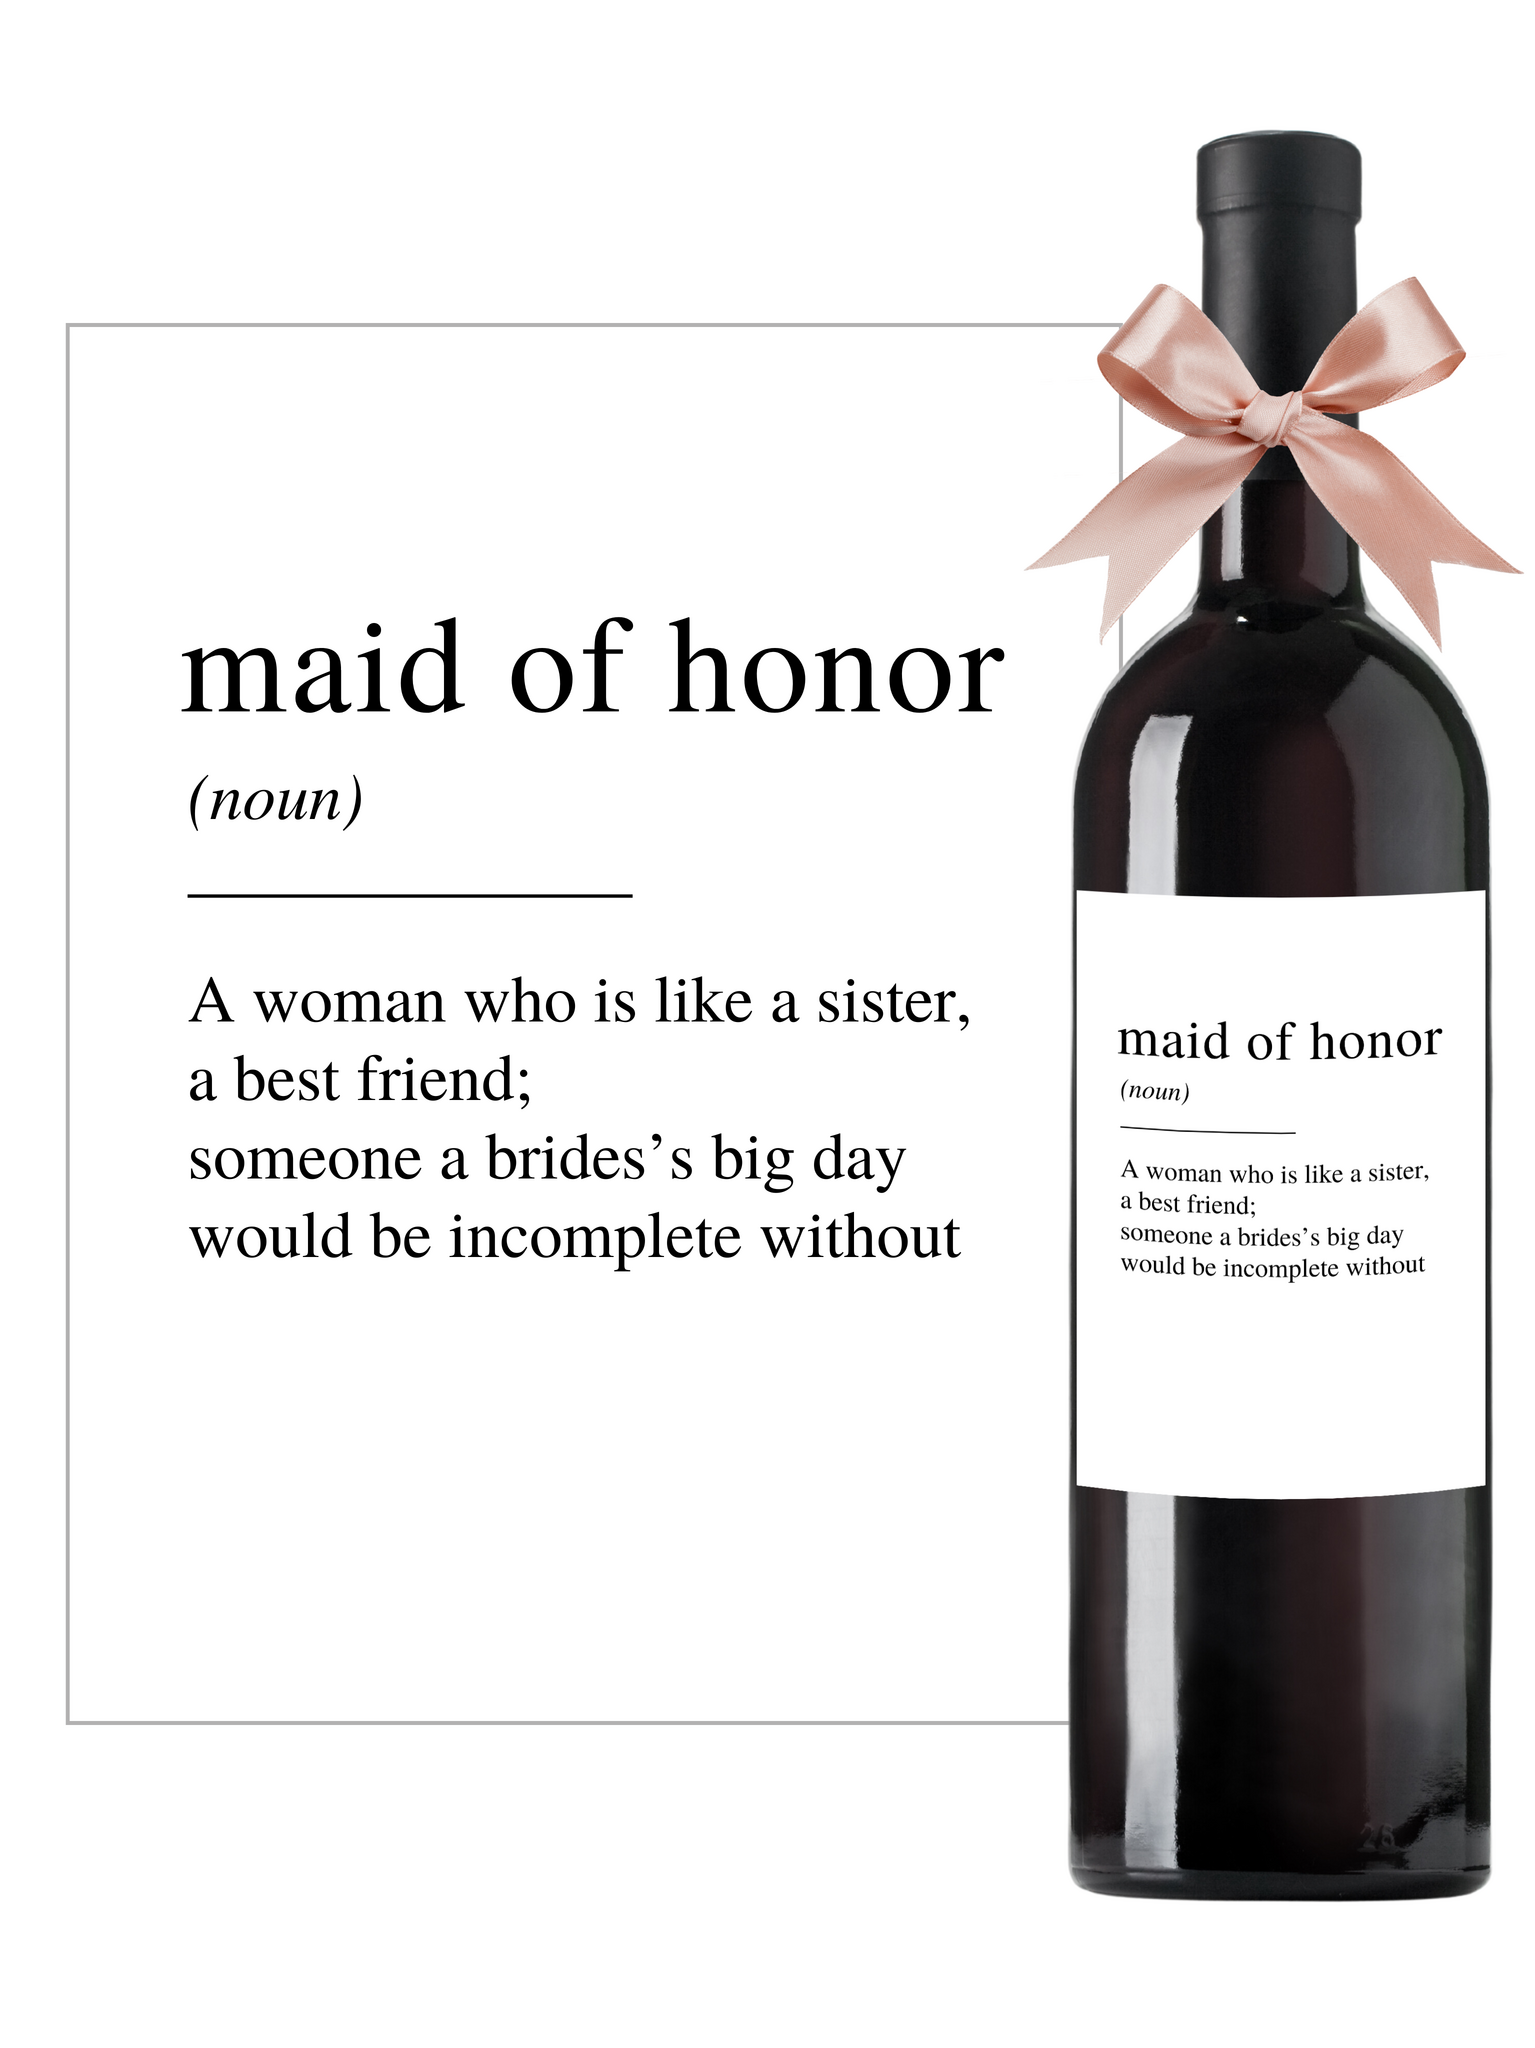 Flasketikett Maid of Honor